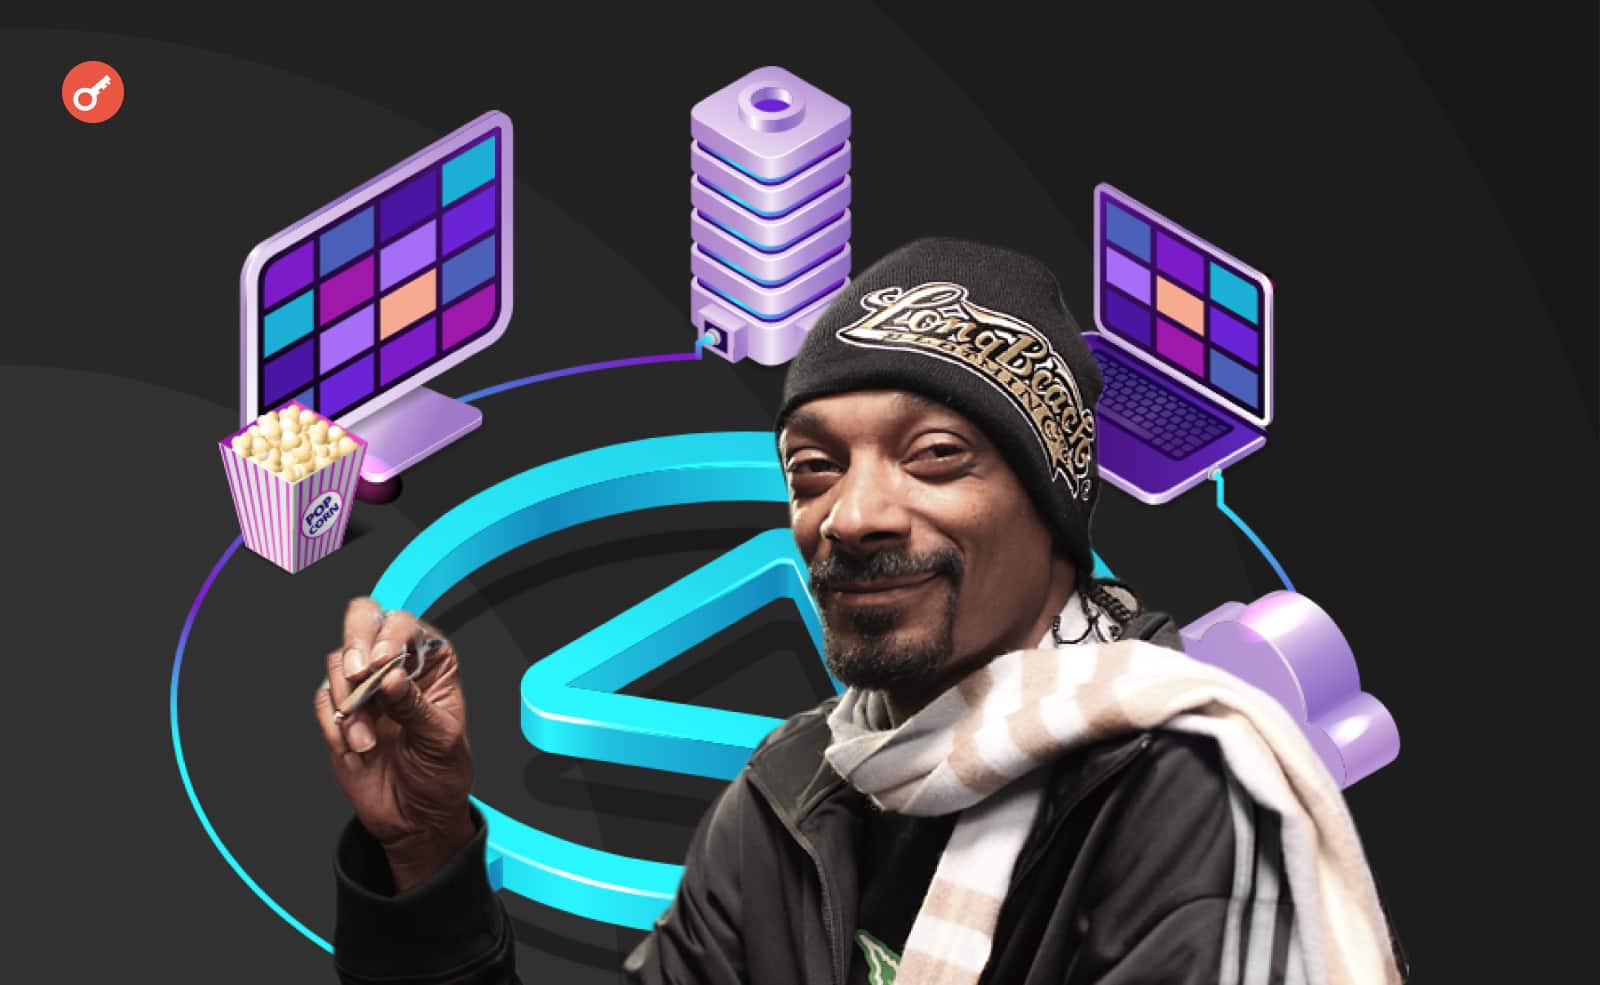 Snoop Dogg став співзасновником Web3 стримінгового додатка Shiller. Головний колаж новини.